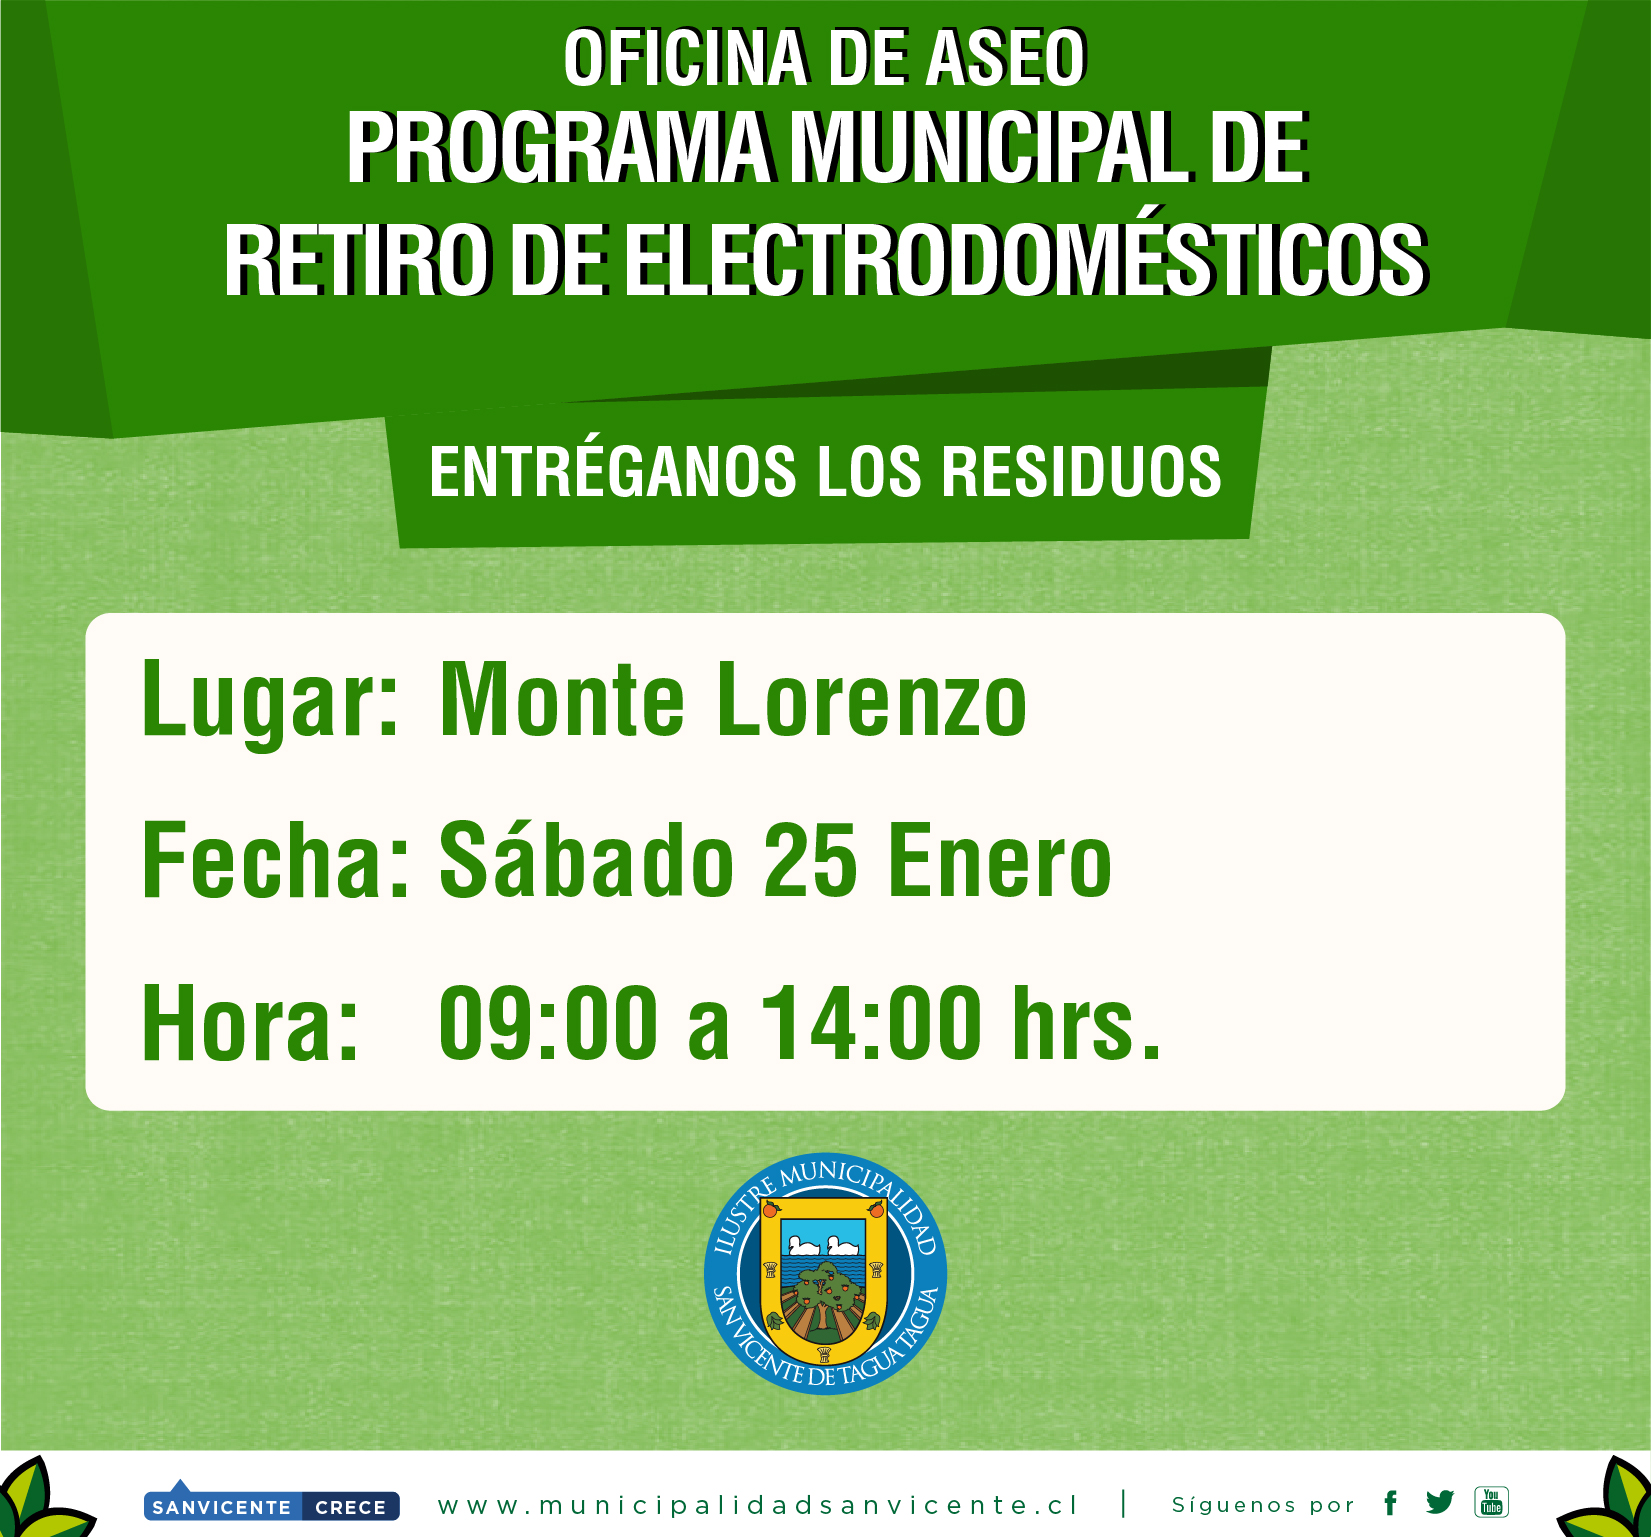 PROGRAMA MUNICIPAL DE RETIRO DE ELECTRODOMÉSTICOS Y MATERIAL RECICLABLE 2020